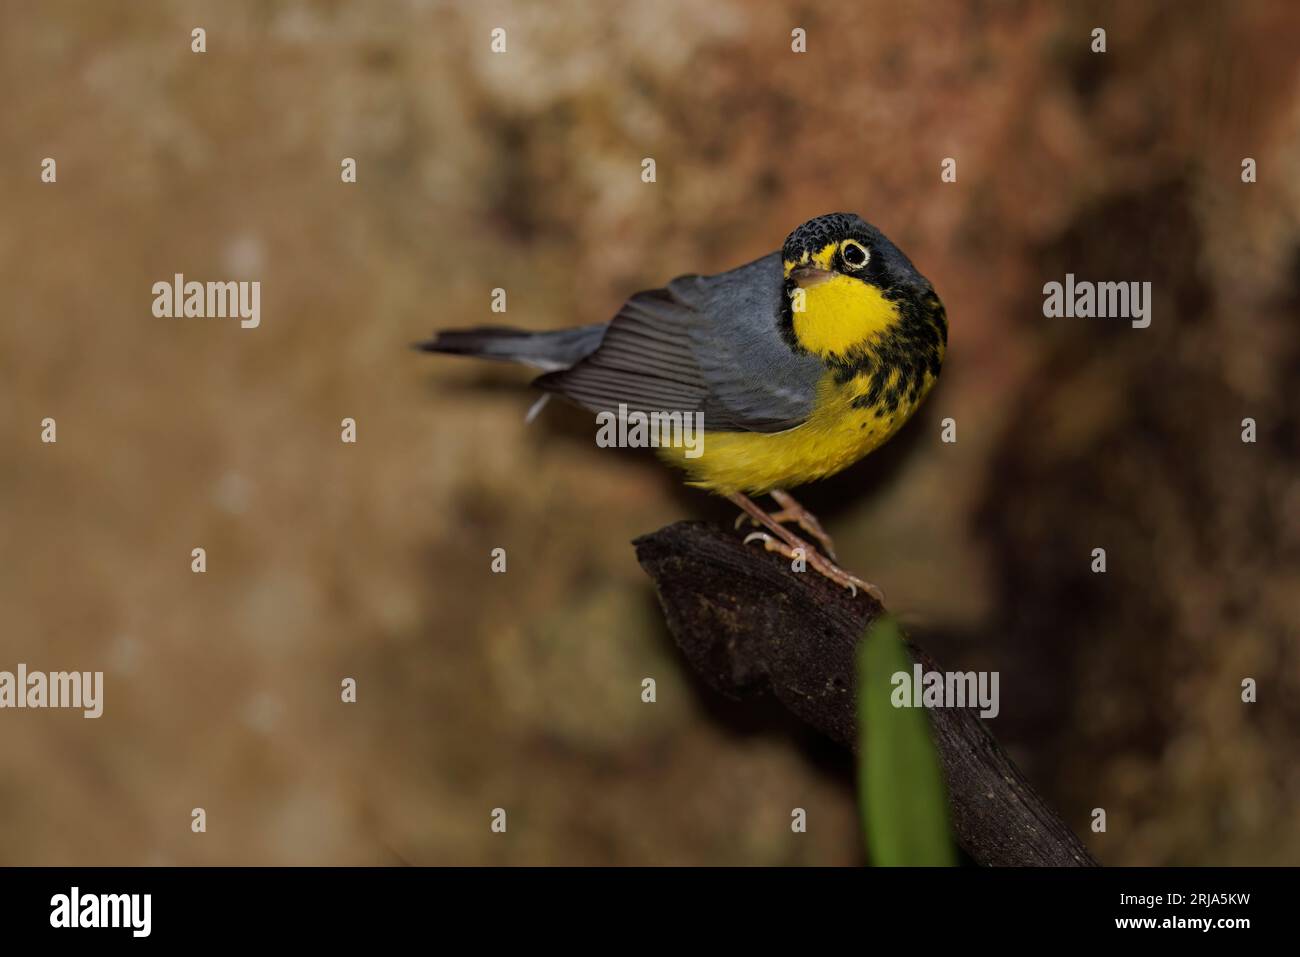 Canada Warbler, Bosque de las aves, La Florida, Colombia, November 2022 Stock Photo